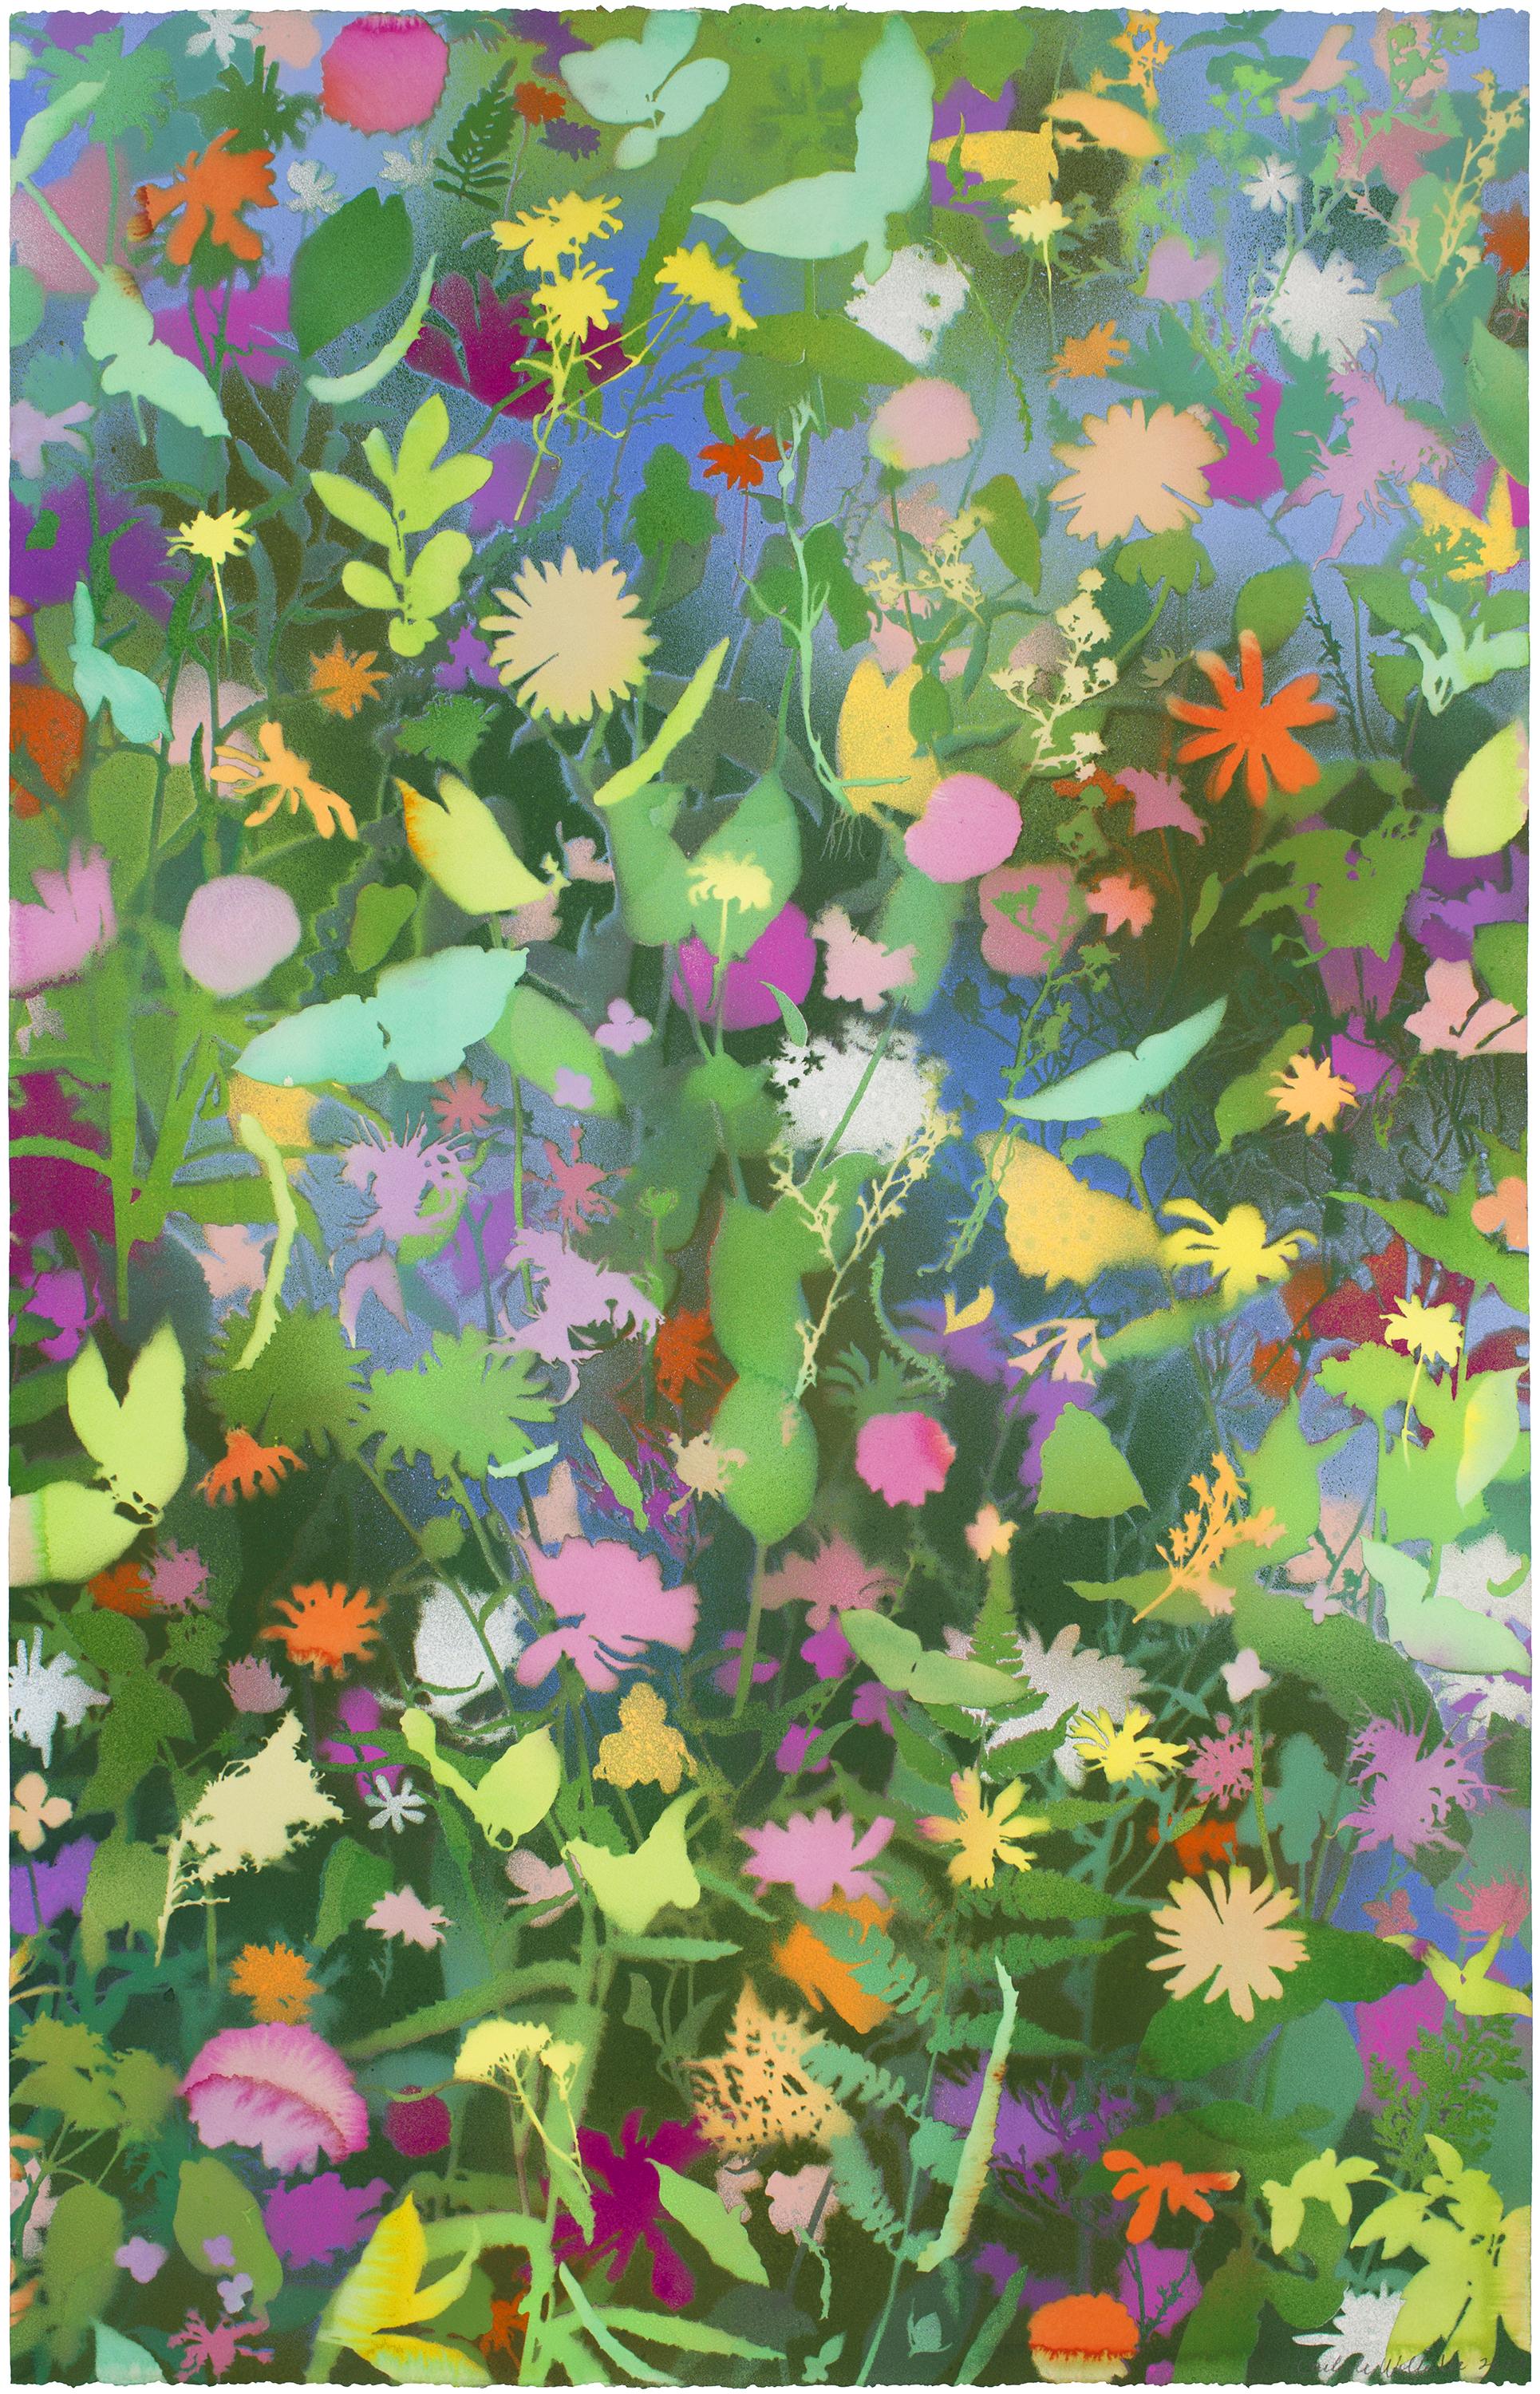 August Wildblumen III" - naturalistische Landschaft, farbenfroh, botanisch, mehrschichtig